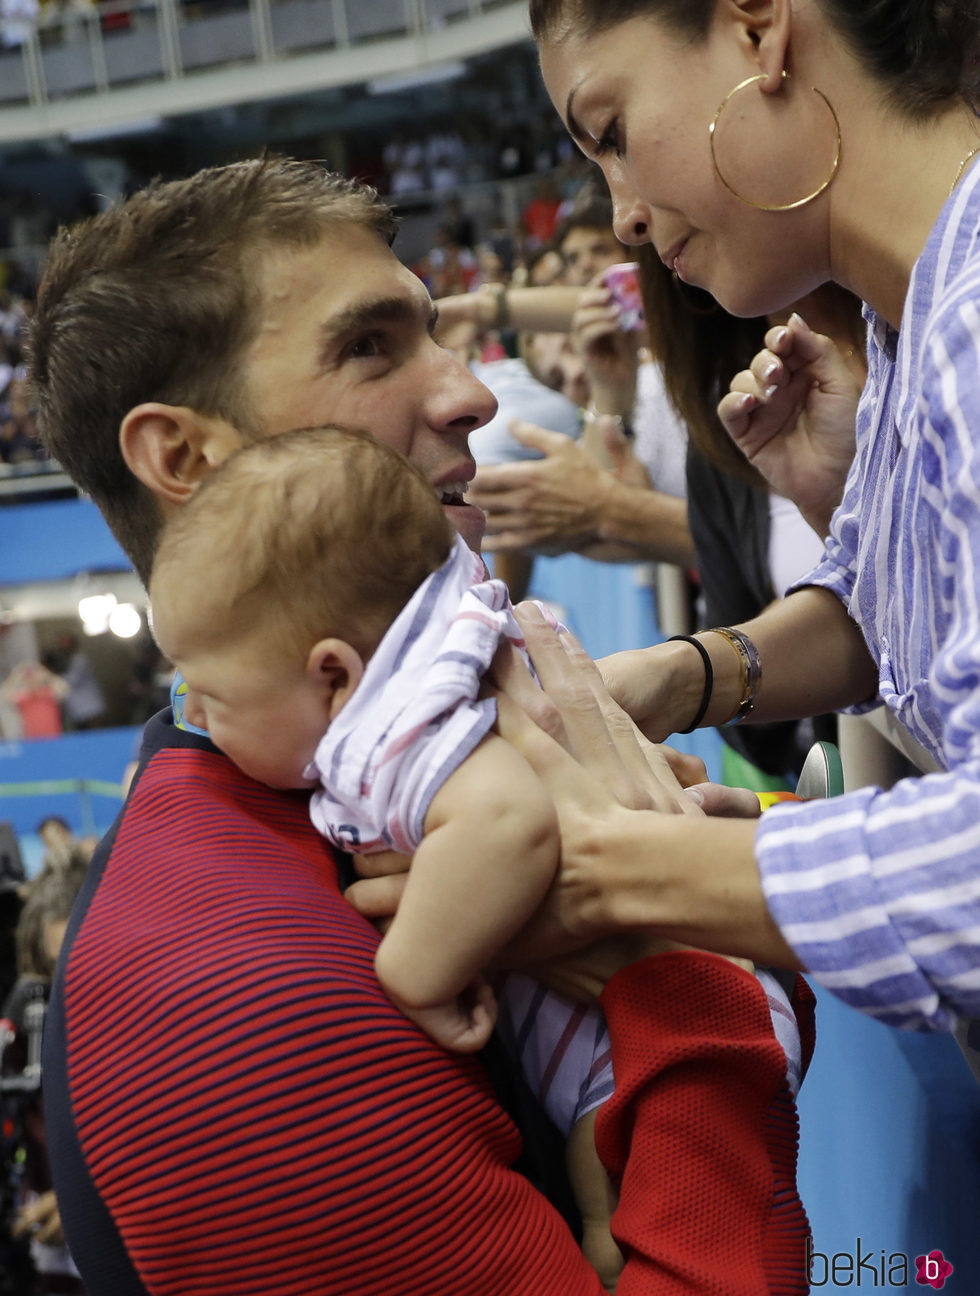 Michael Phelps abrazando a su bebé en lso Juegos Olímpicos de Río 2016.